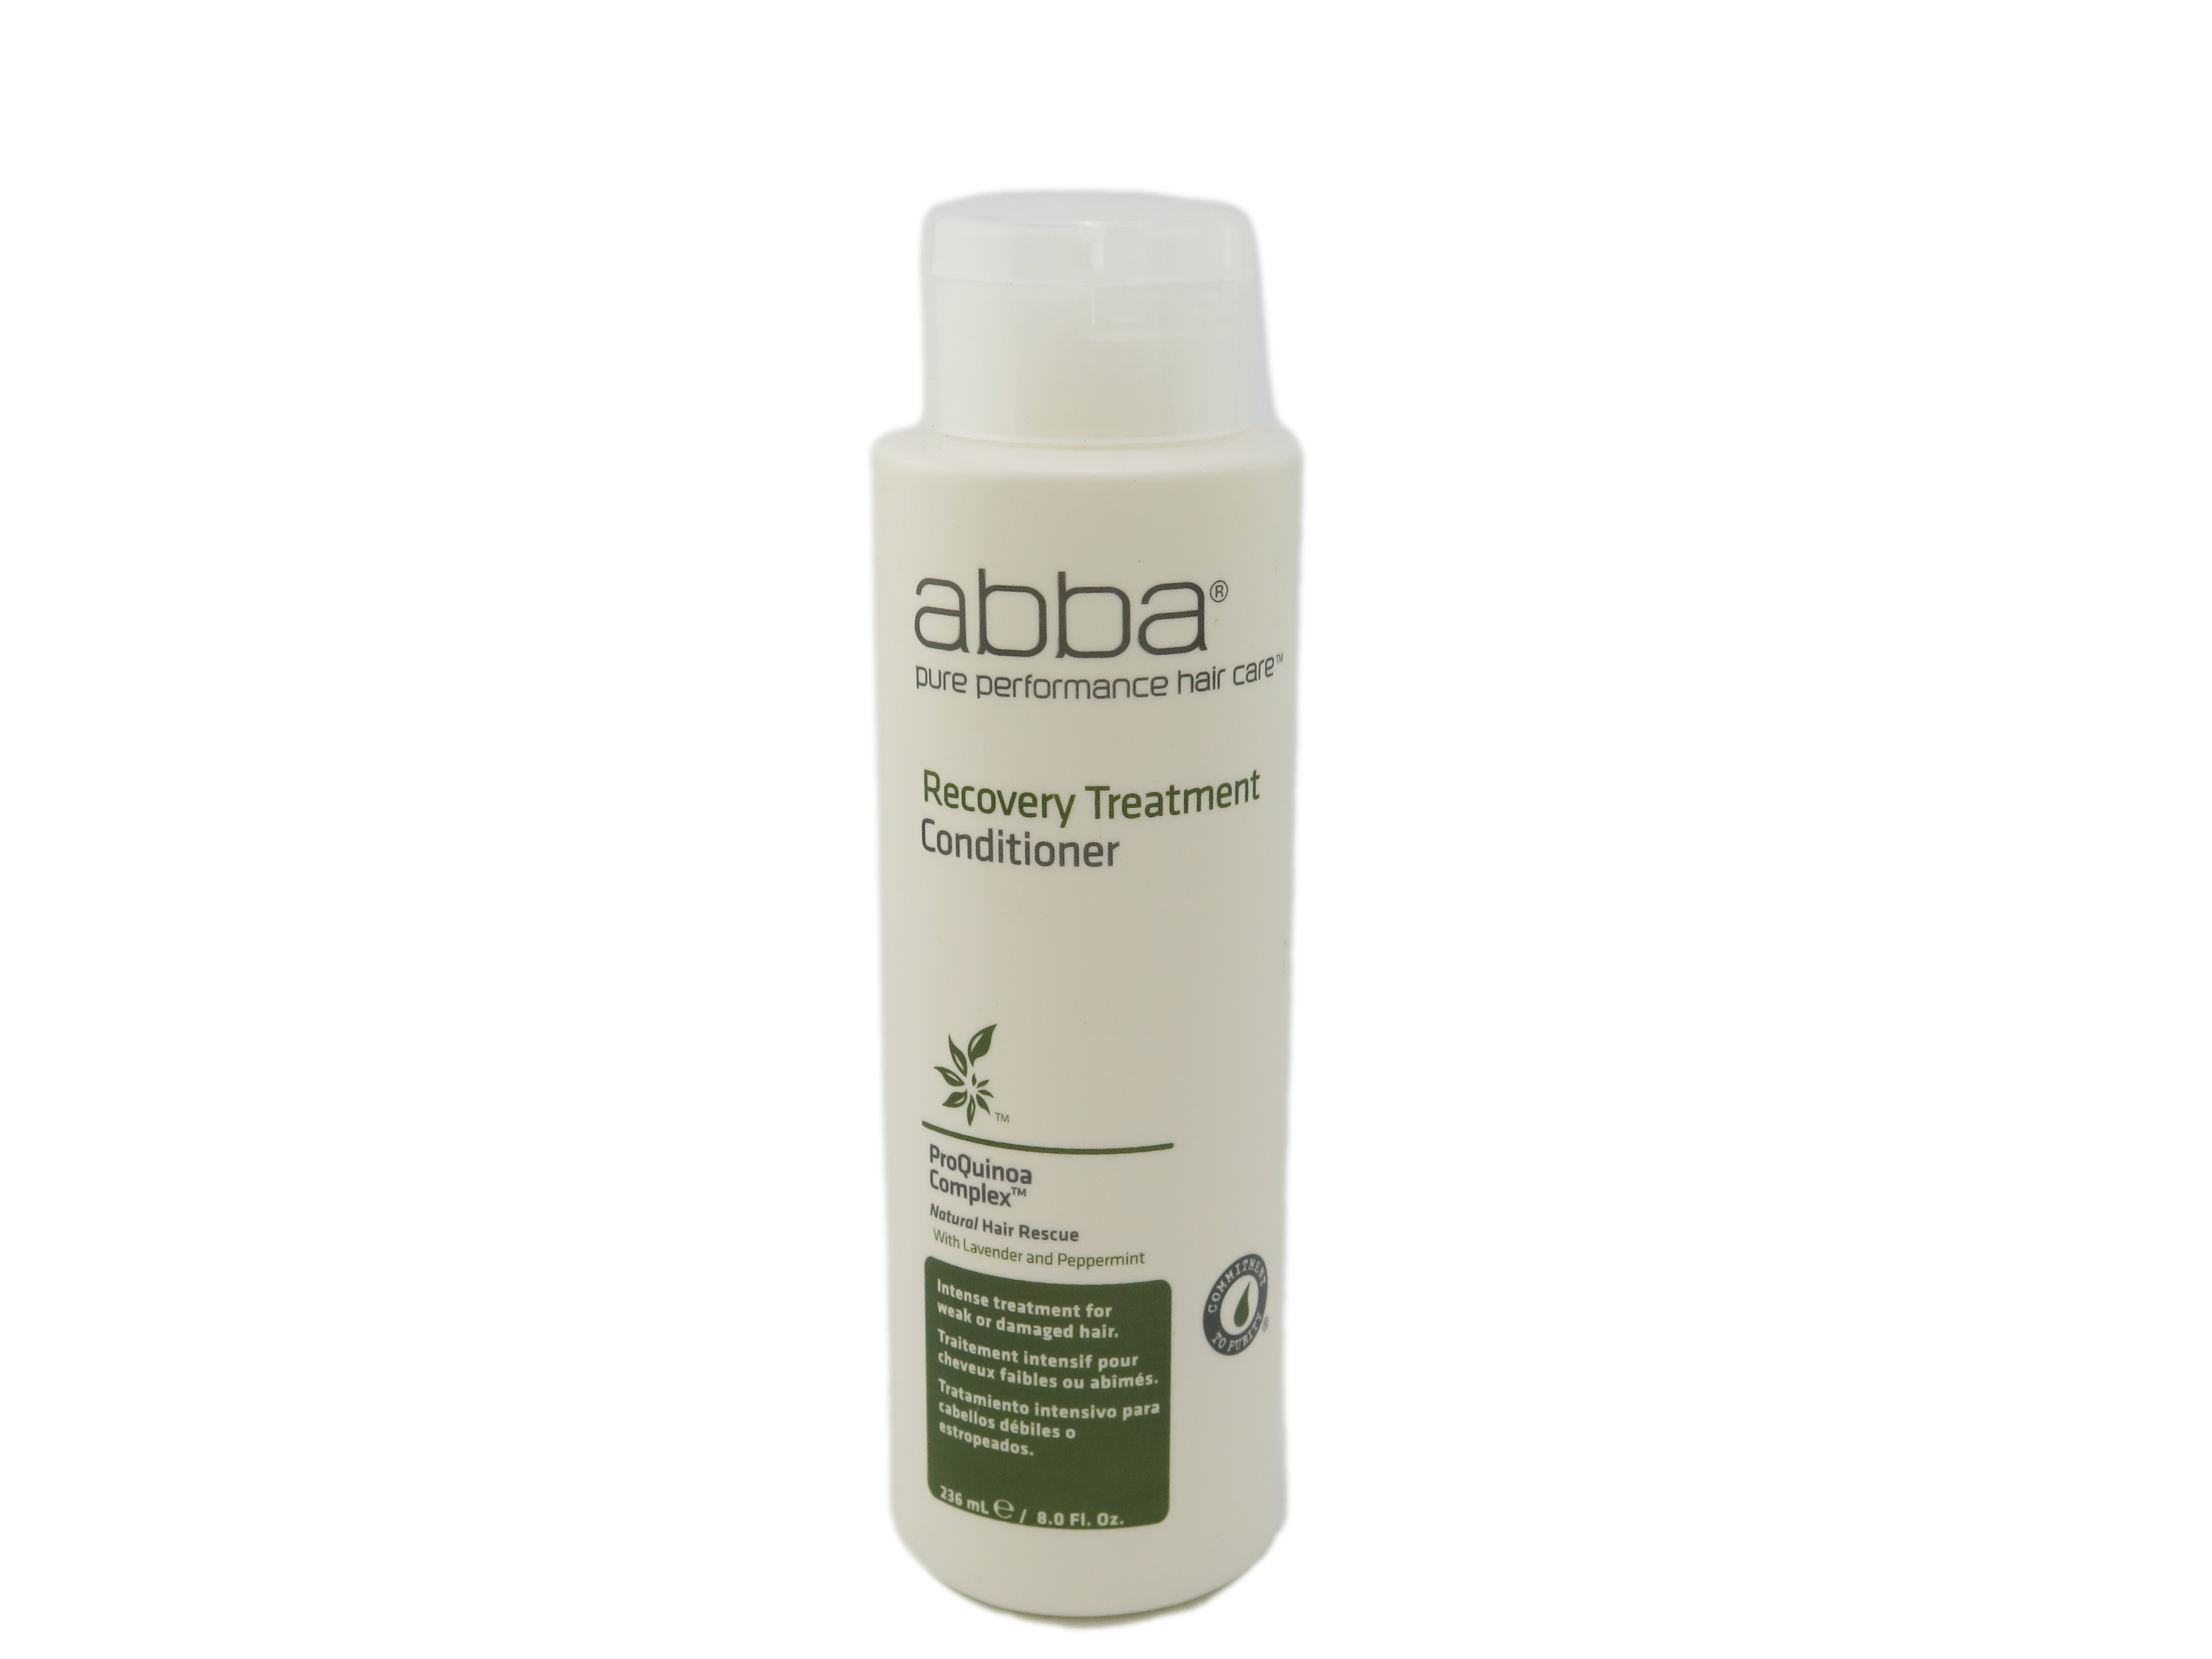 Abba ProQuinoa Complex Recovery Treatment Conditioner 8 fl oz